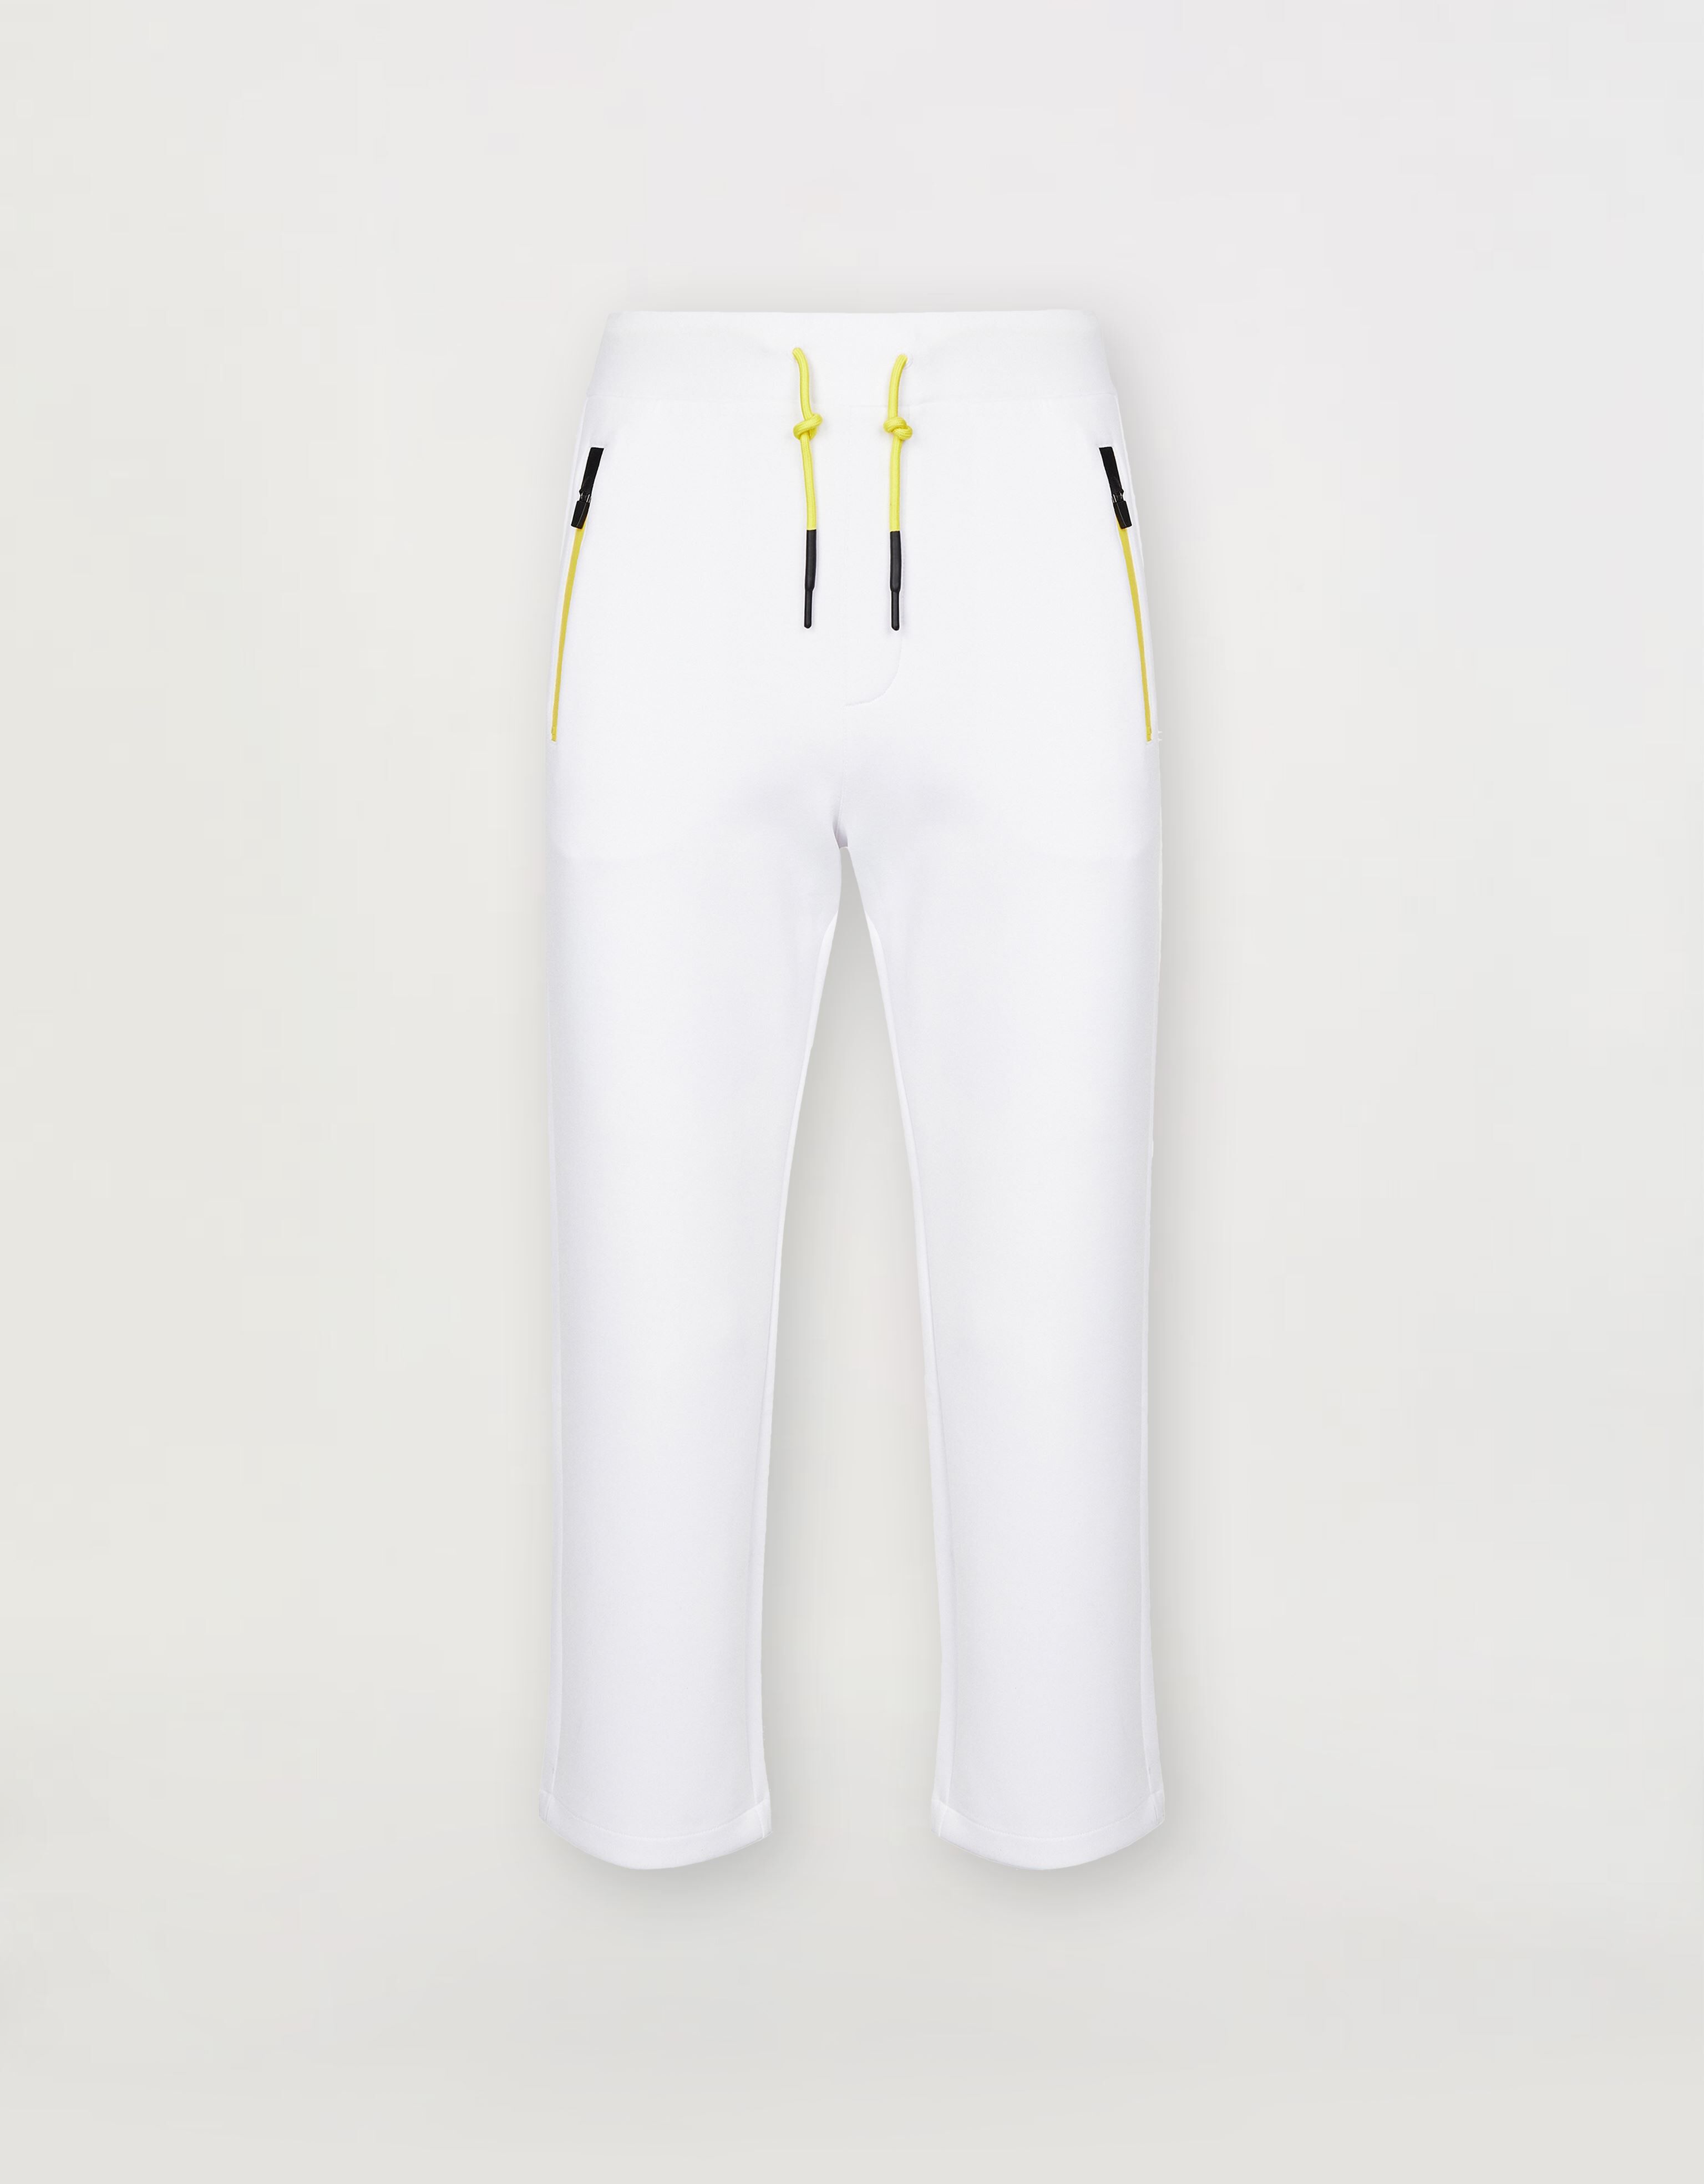 Ferrari Pantalon de jogging homme en scuba stretch recyclé Blanc optique 46957f